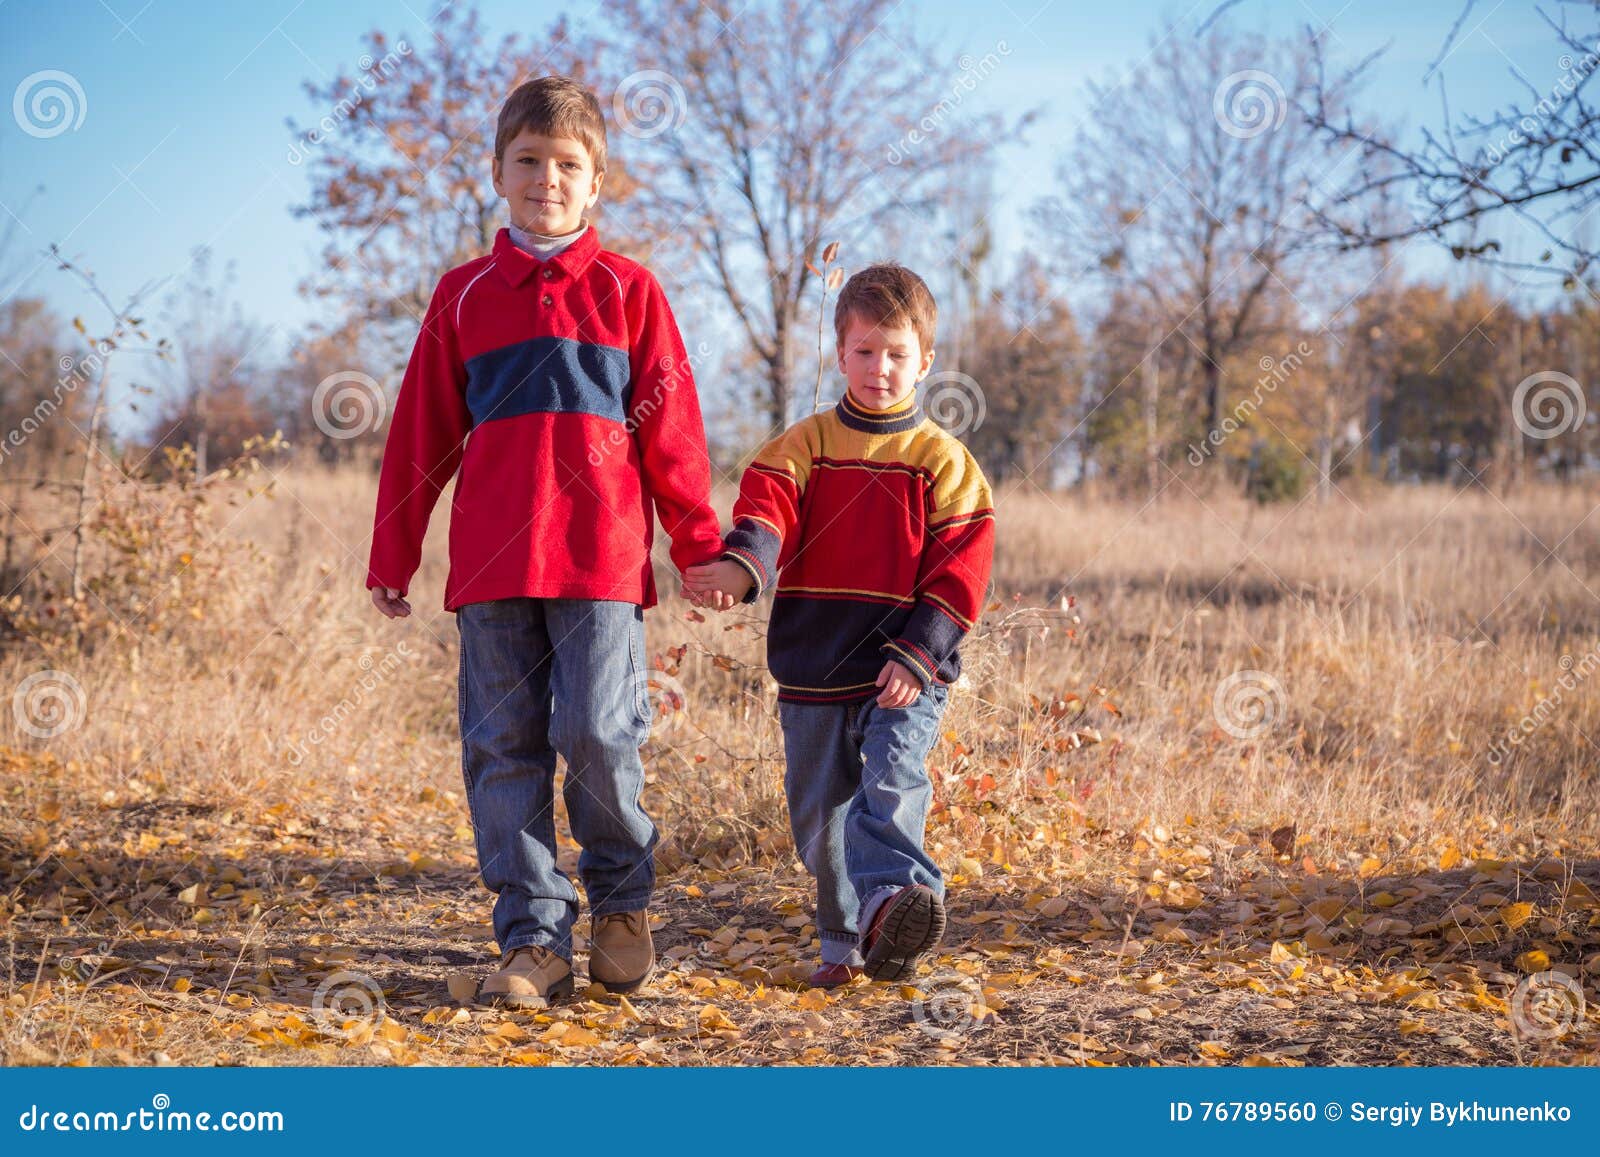 Мальчики пошли. Два мальчика идут. Два мальчика гуляют. Фото два мальчика в парке. Два мальчика идут по улице.